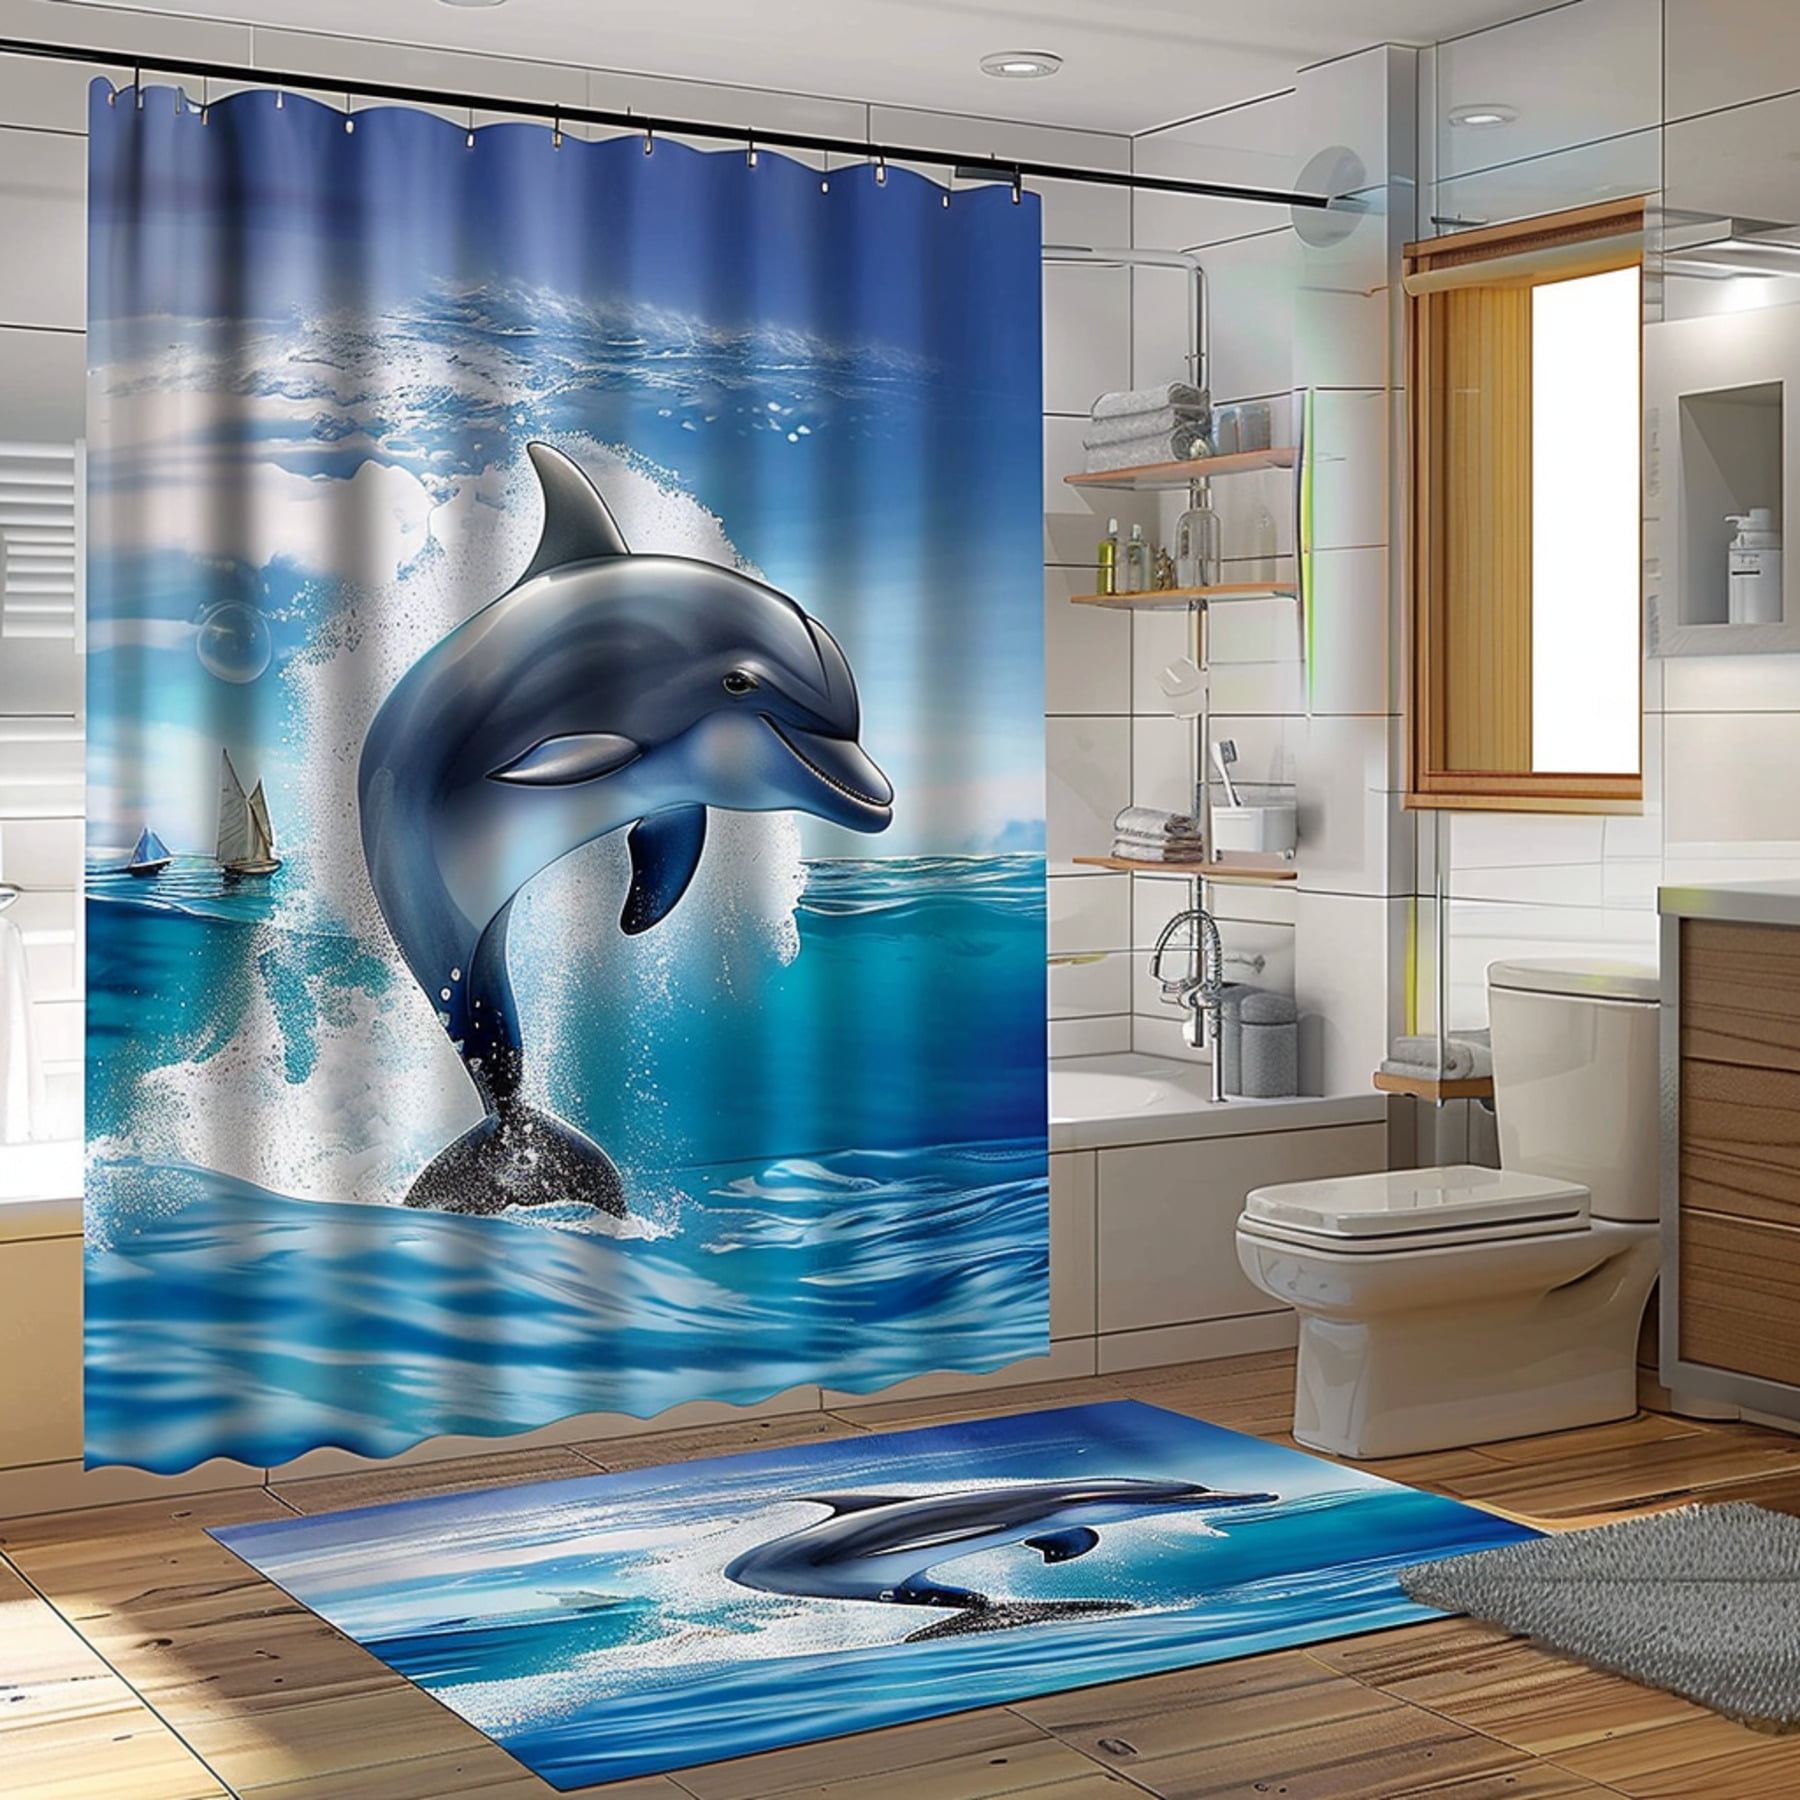 Ocean Dolphin Bathroom Decor Shower Curtain White TilesBlue Sky Window ...